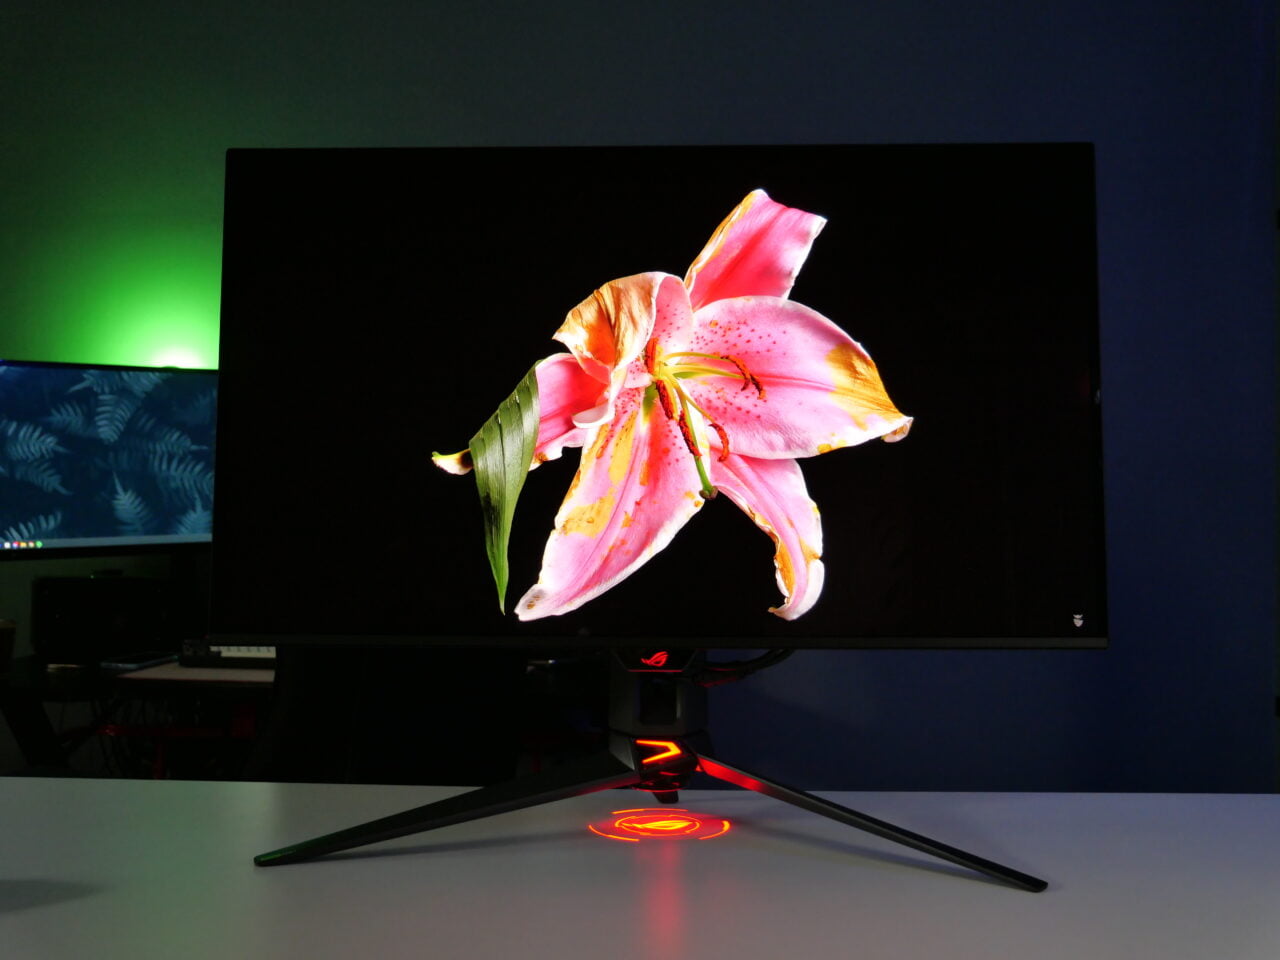 Monitor komputerowy z wyświetlonym obrazem dużego, różowego kwiatu lilii na ciemnym tle, postawiony na biurku w oświetlonym wielokolorowym światłem pokoju.